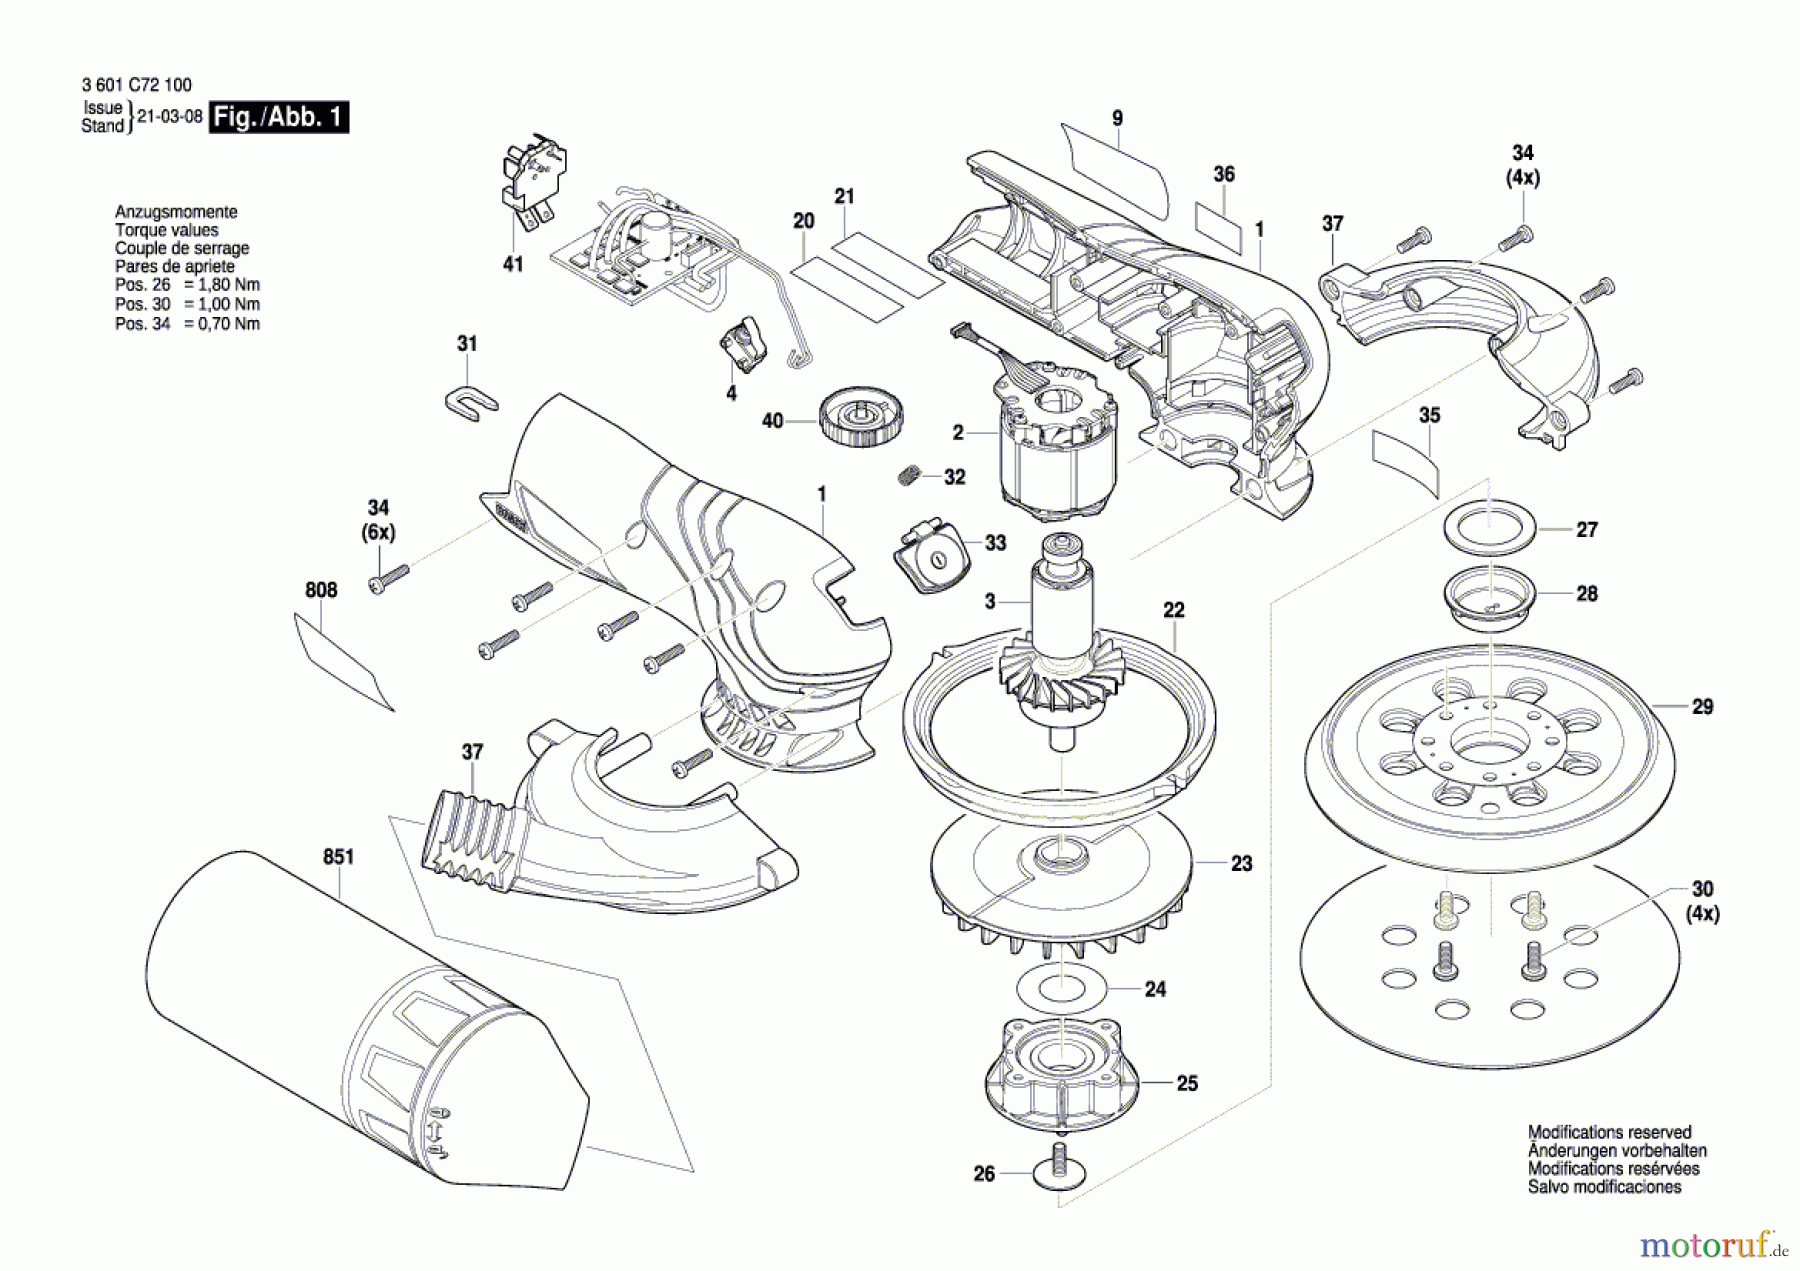  Bosch Werkzeug Exzenterschleifer GEX 12V-125 Seite 1